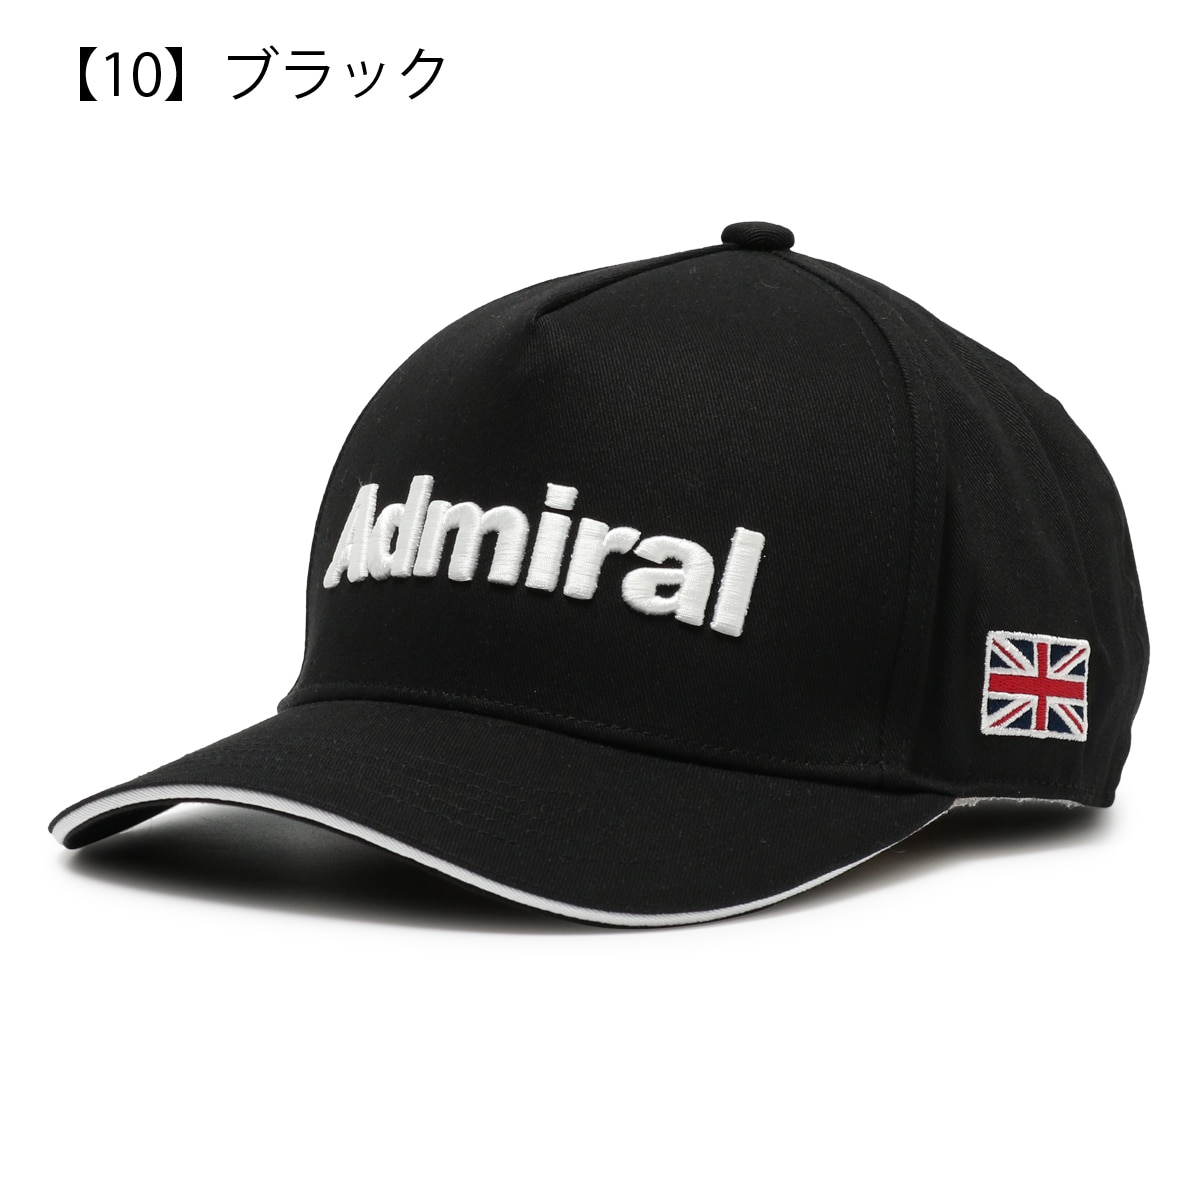 アドミラル ゴルフ キャップ 通気性 メンズ ADMB323F ベーシック Admiral 帽子 刺繍 スポーツ アウトドア ランニング マラソン  ウォーキング カノコ サイズ調節可能